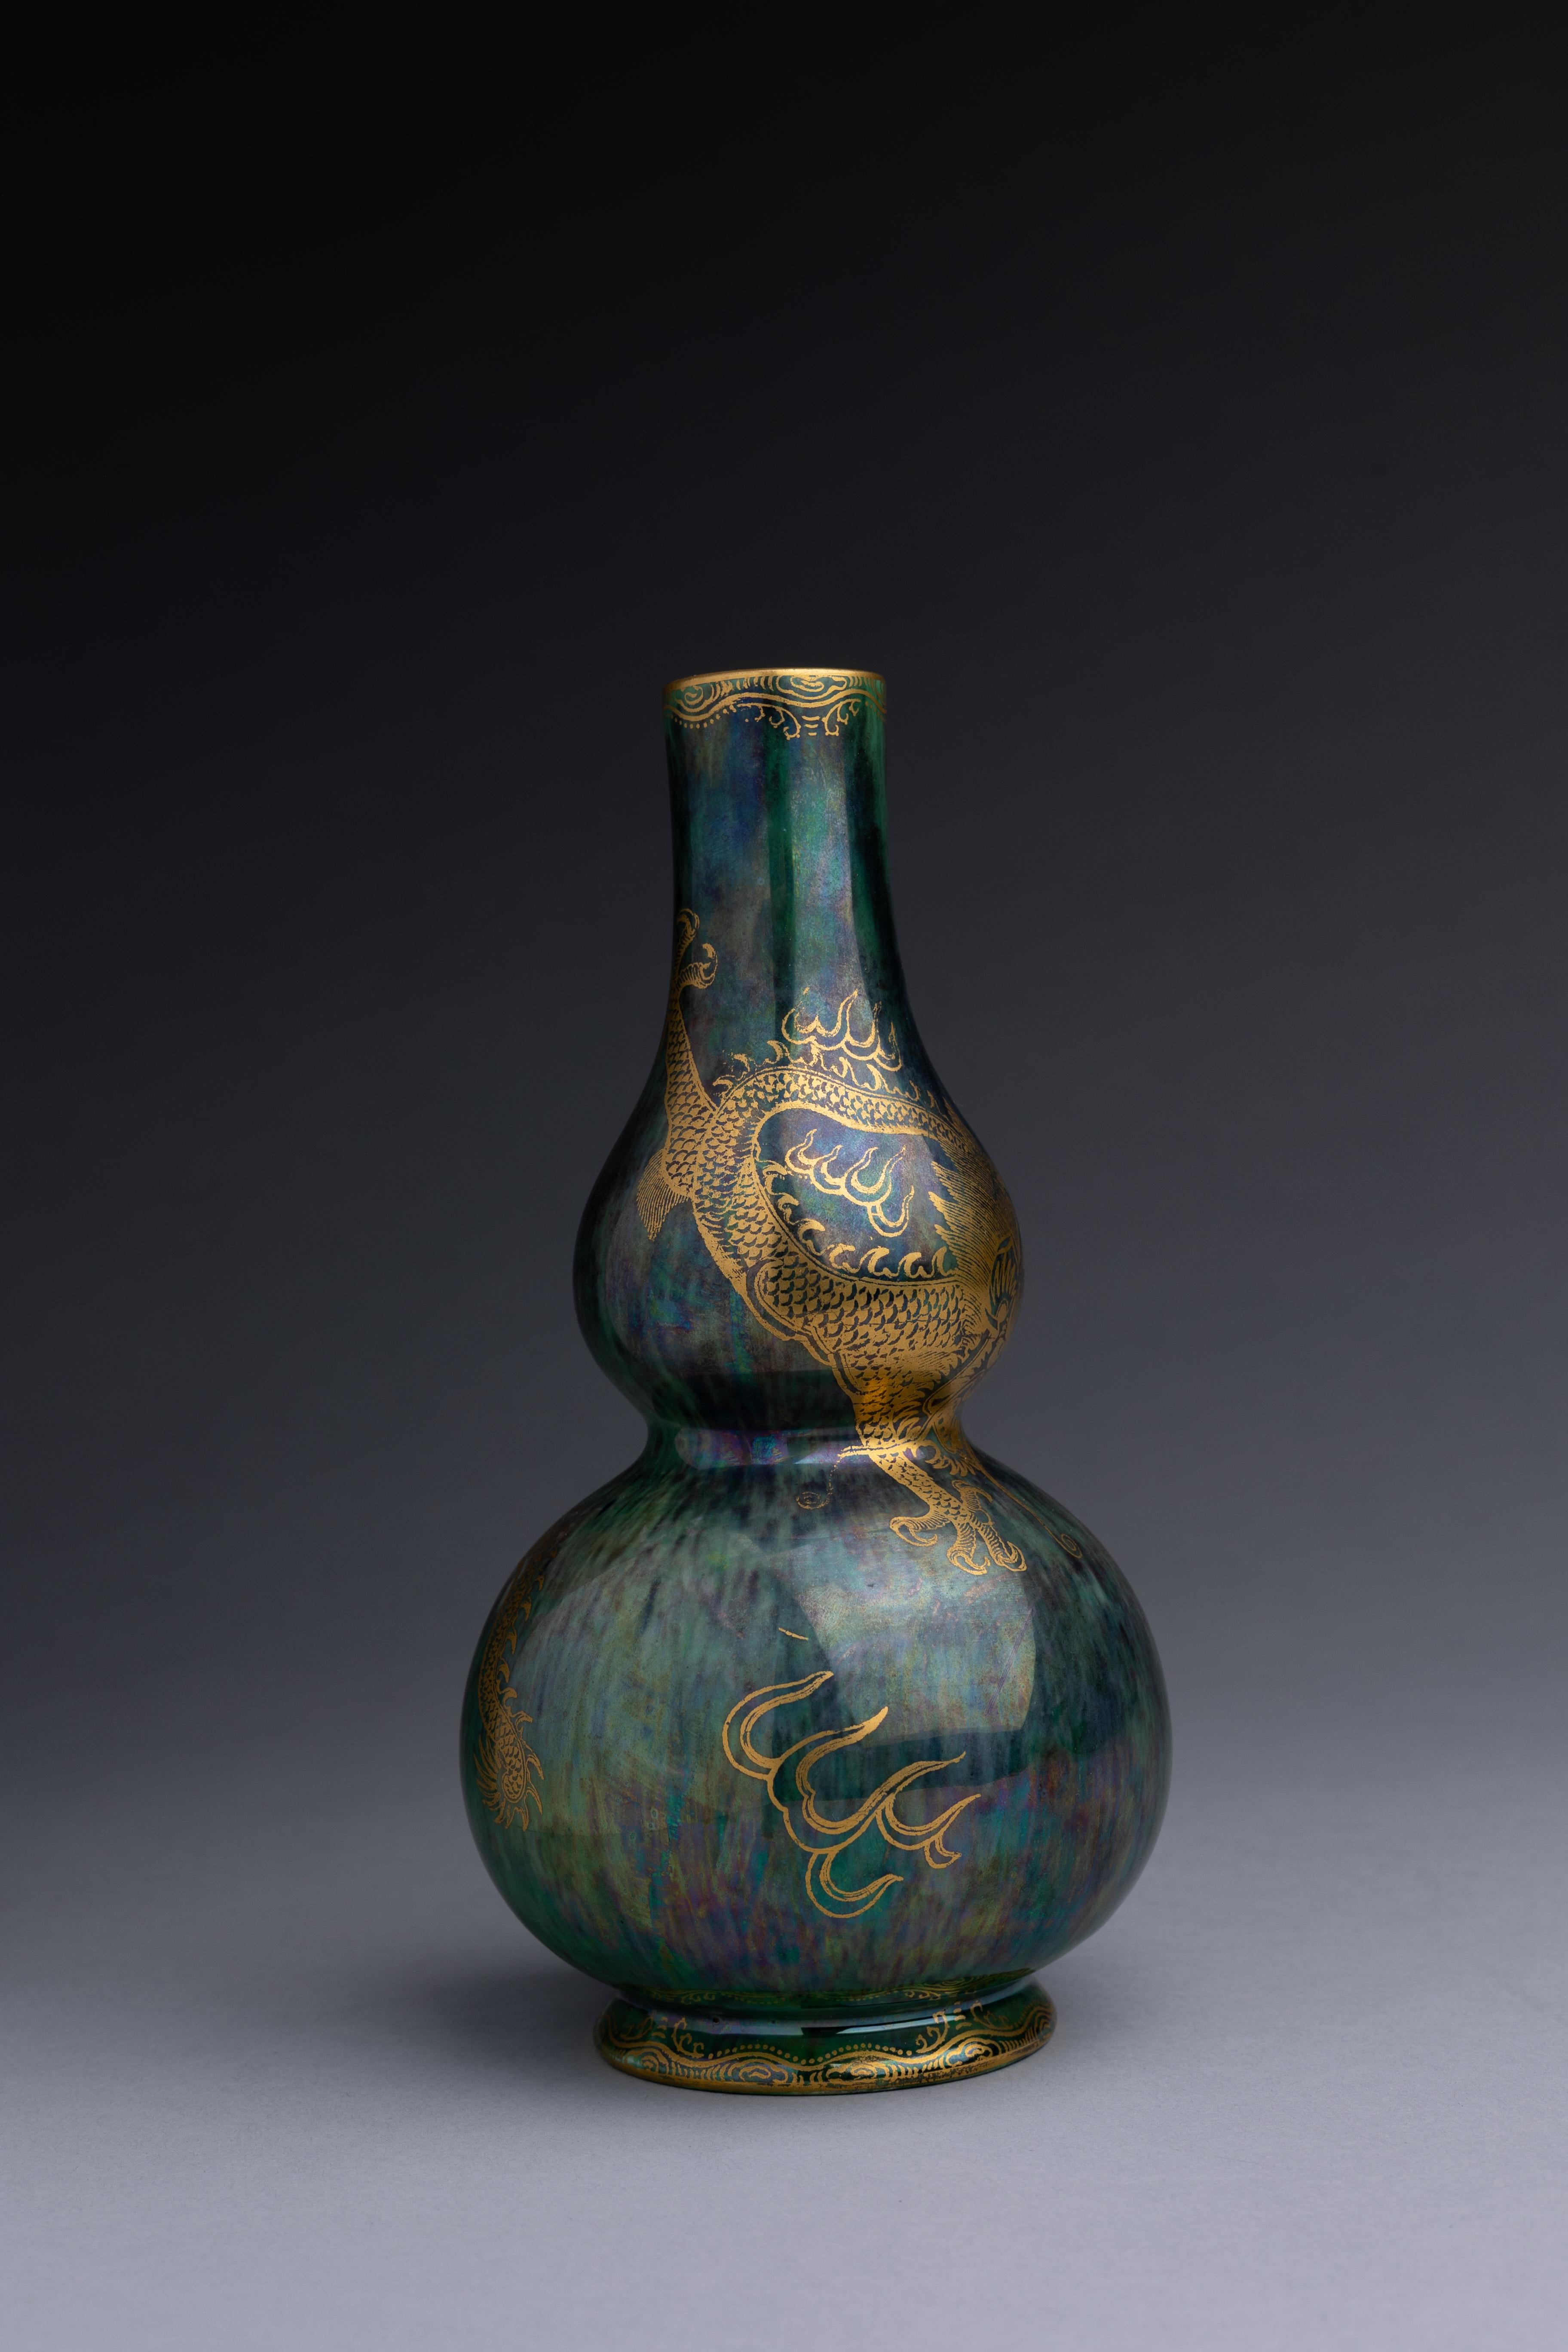 Glazed Daisy Makeig-Jones Green Lustre Dragon Vase